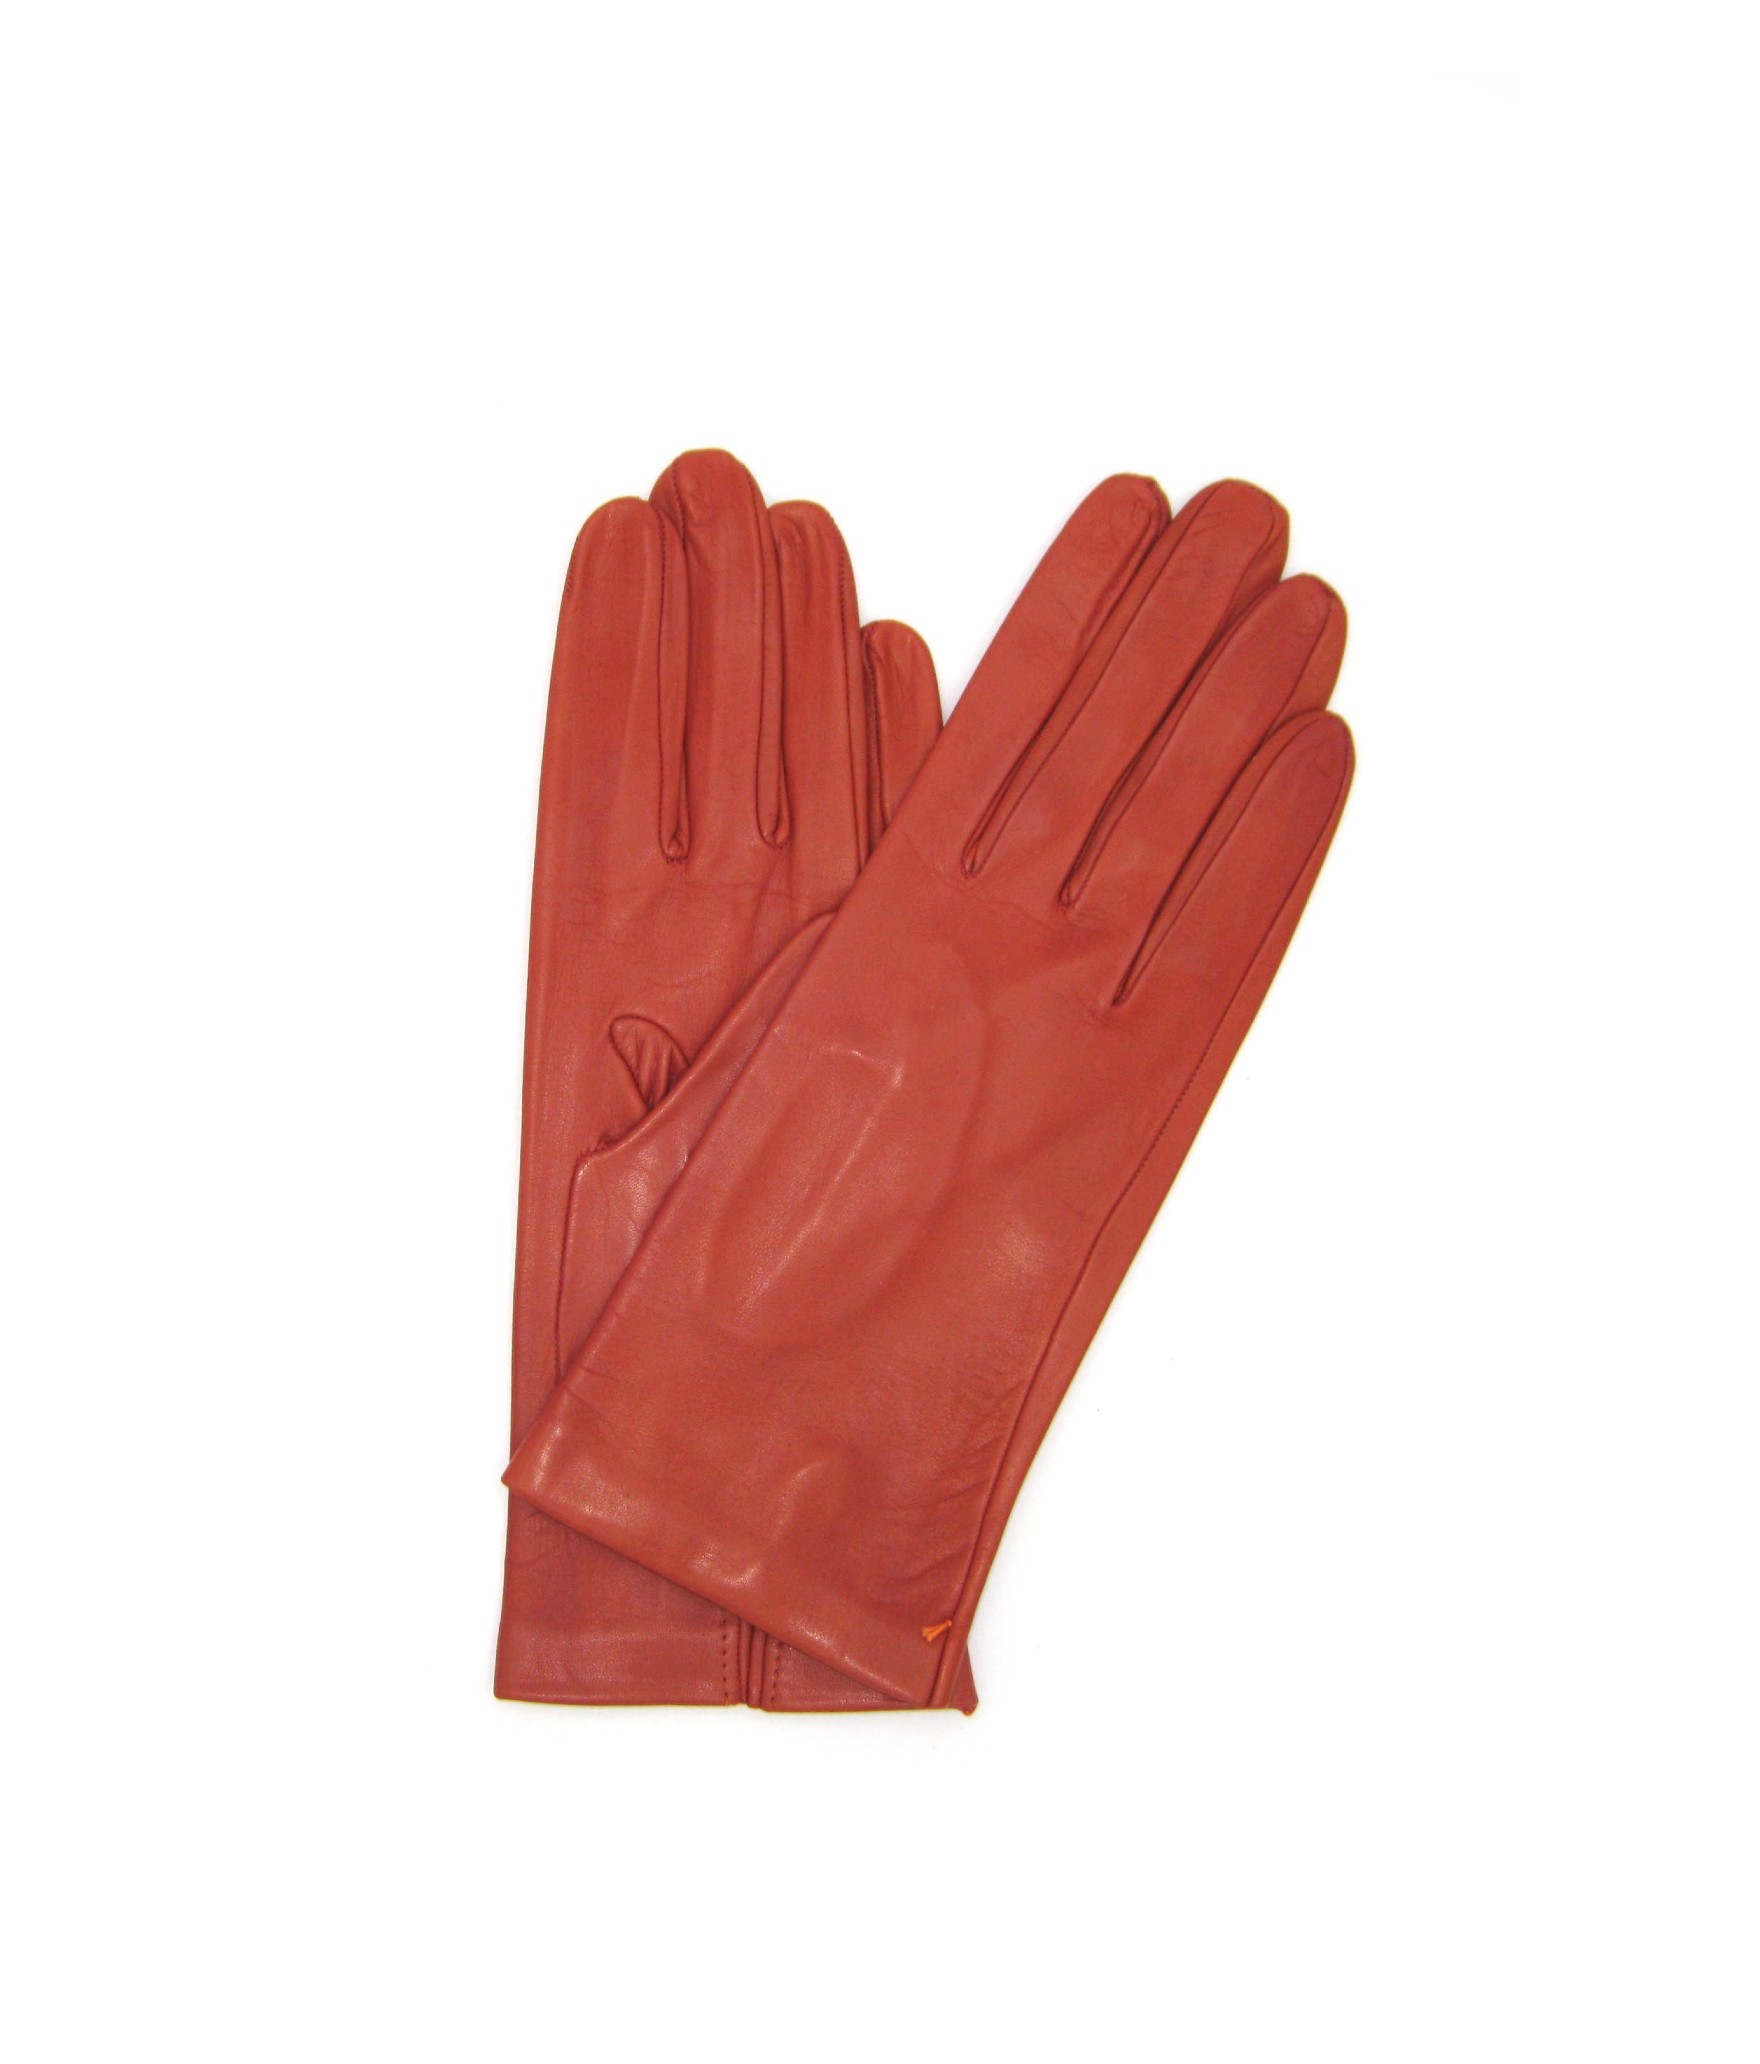 Nappa leather gloves 2bt unlined   Dark Orange